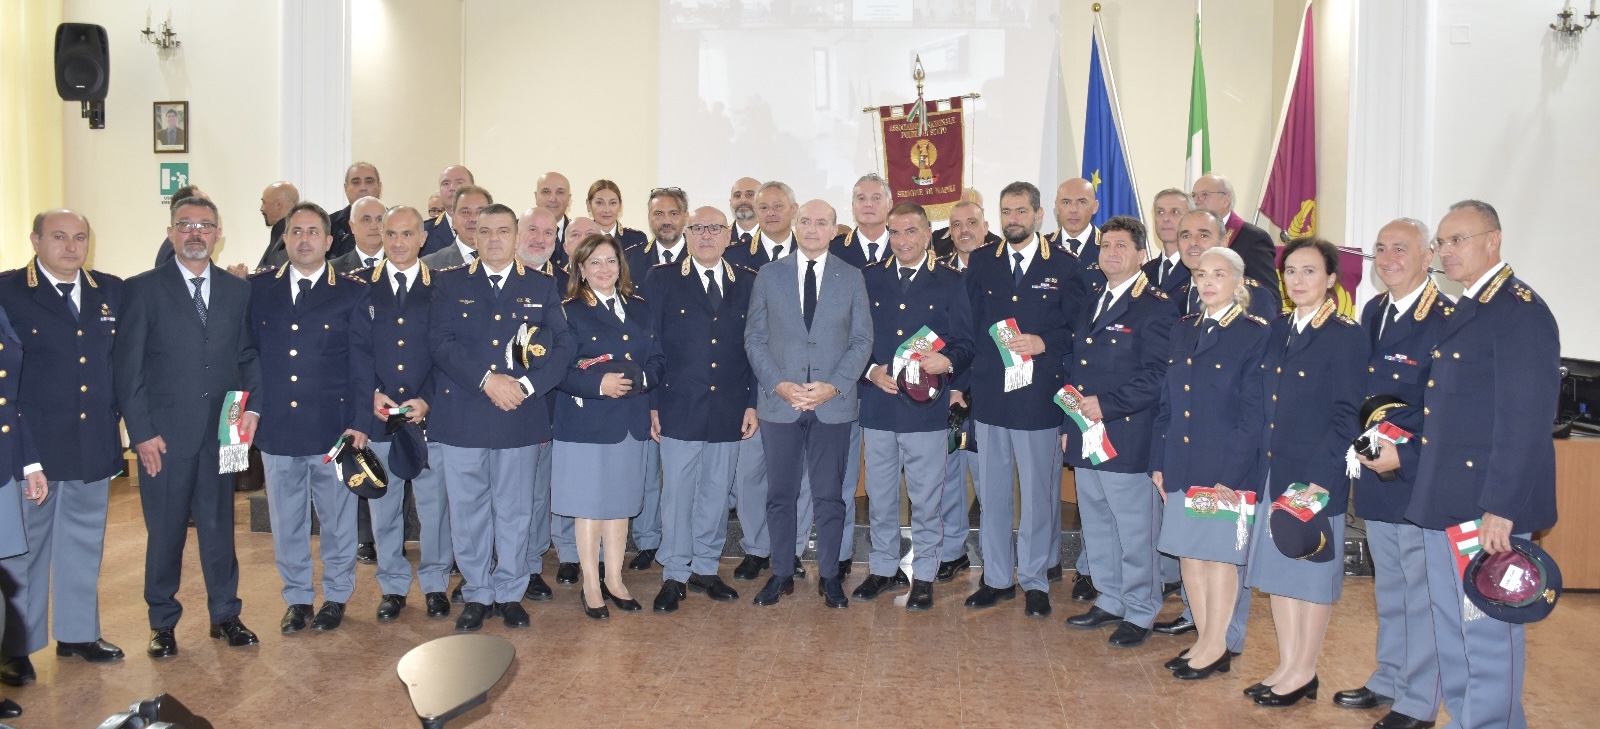 Il Questore di Napoli consegna la sciarpa tricolore ai neo-funzionari della Polizia di Stato